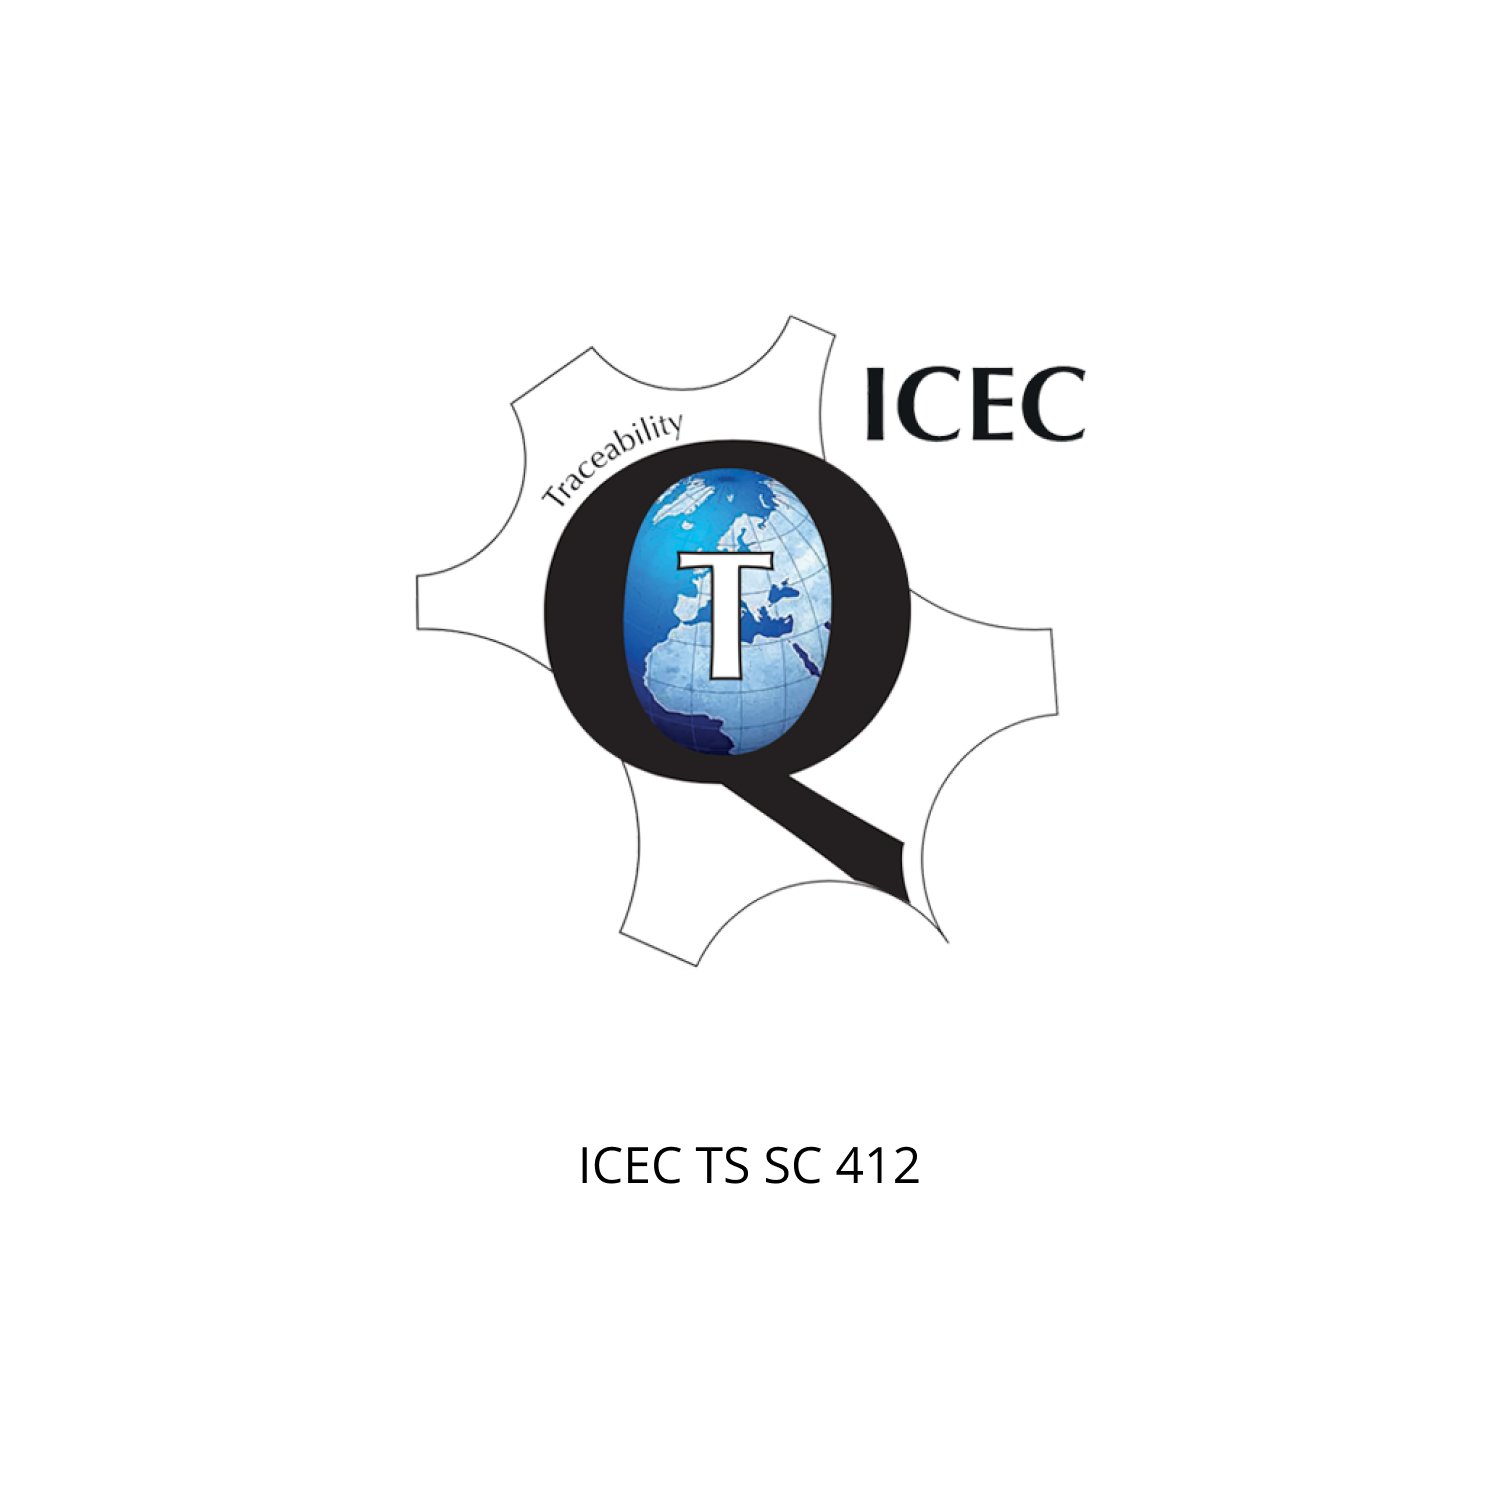 ICEC TSCS 410.jpg (Copia) (Copia)